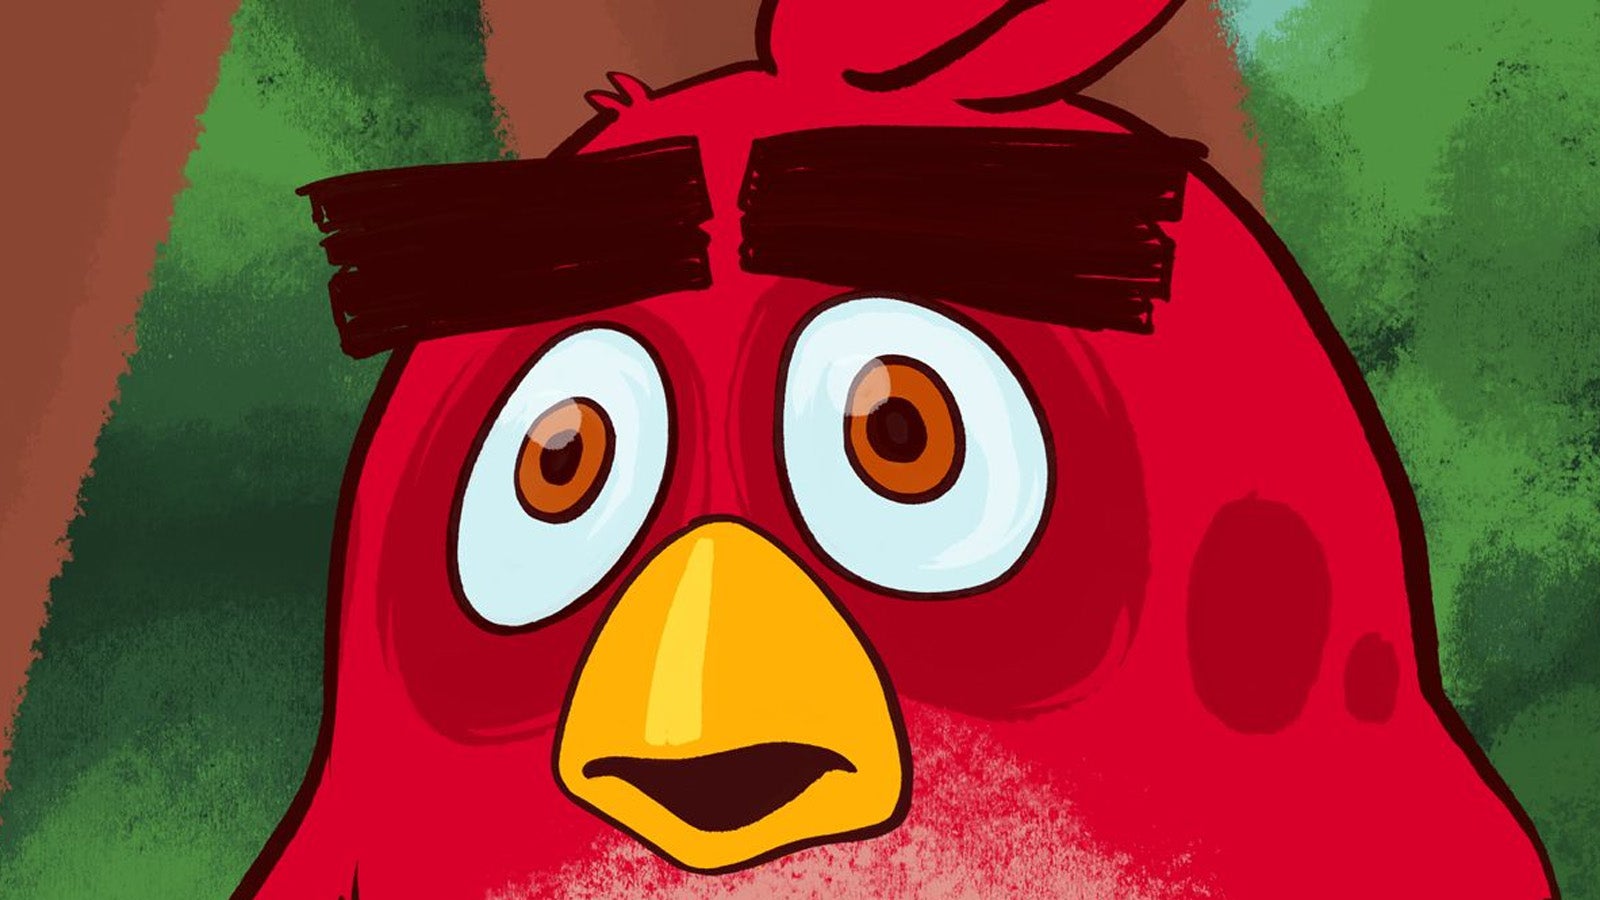 ستغادر Angry Birds متجر Android ، حيث يقول المطور إنها تحظى بشعبية كبيرة